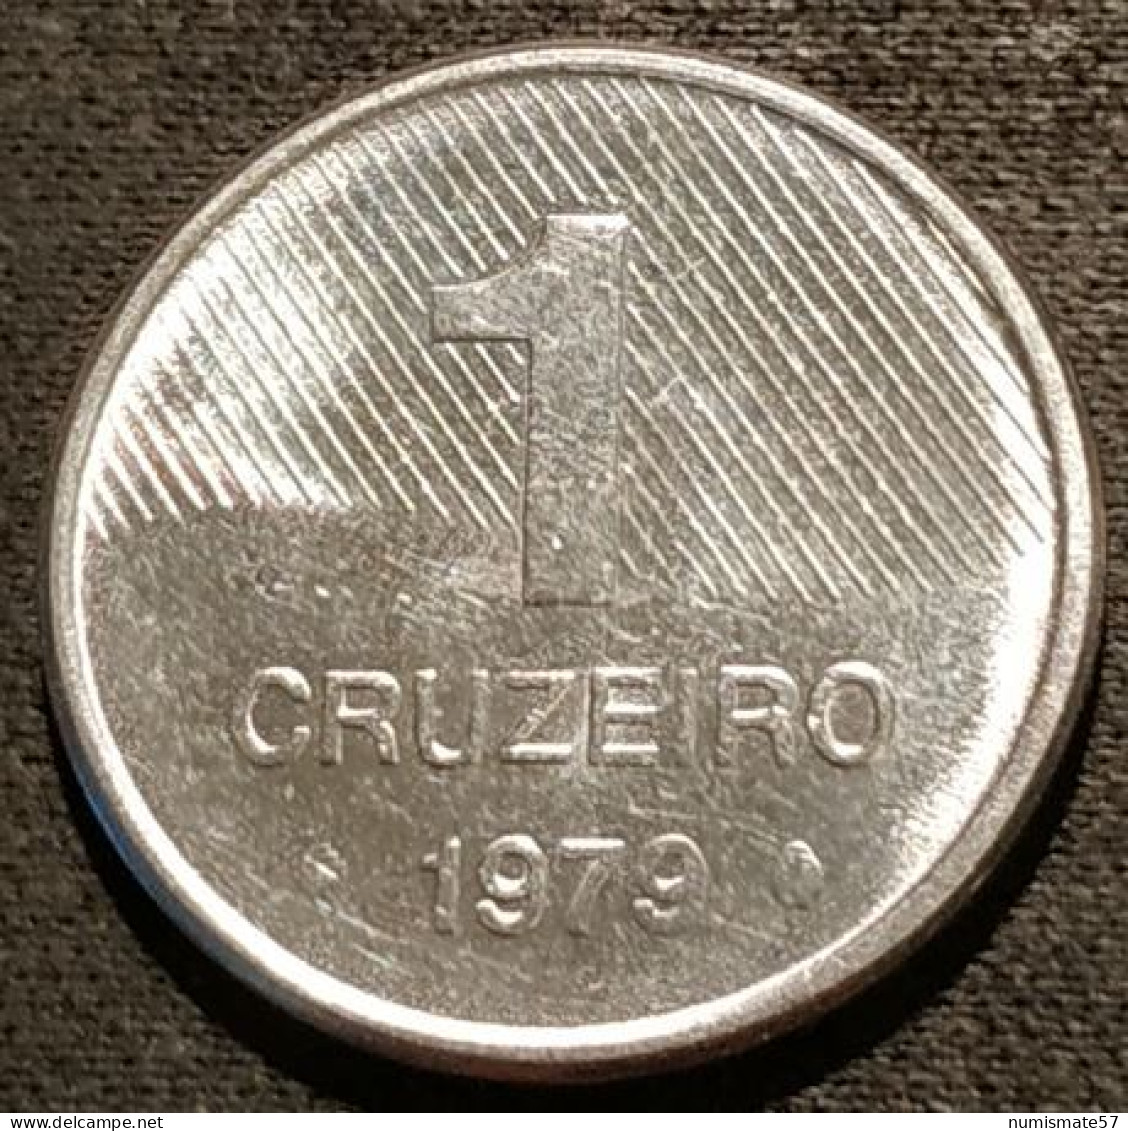 BRESIL - 1 CRUZEIRO 1979 - Canne à Sucre - KM 590 - Brasil - Brazil - Brasilien